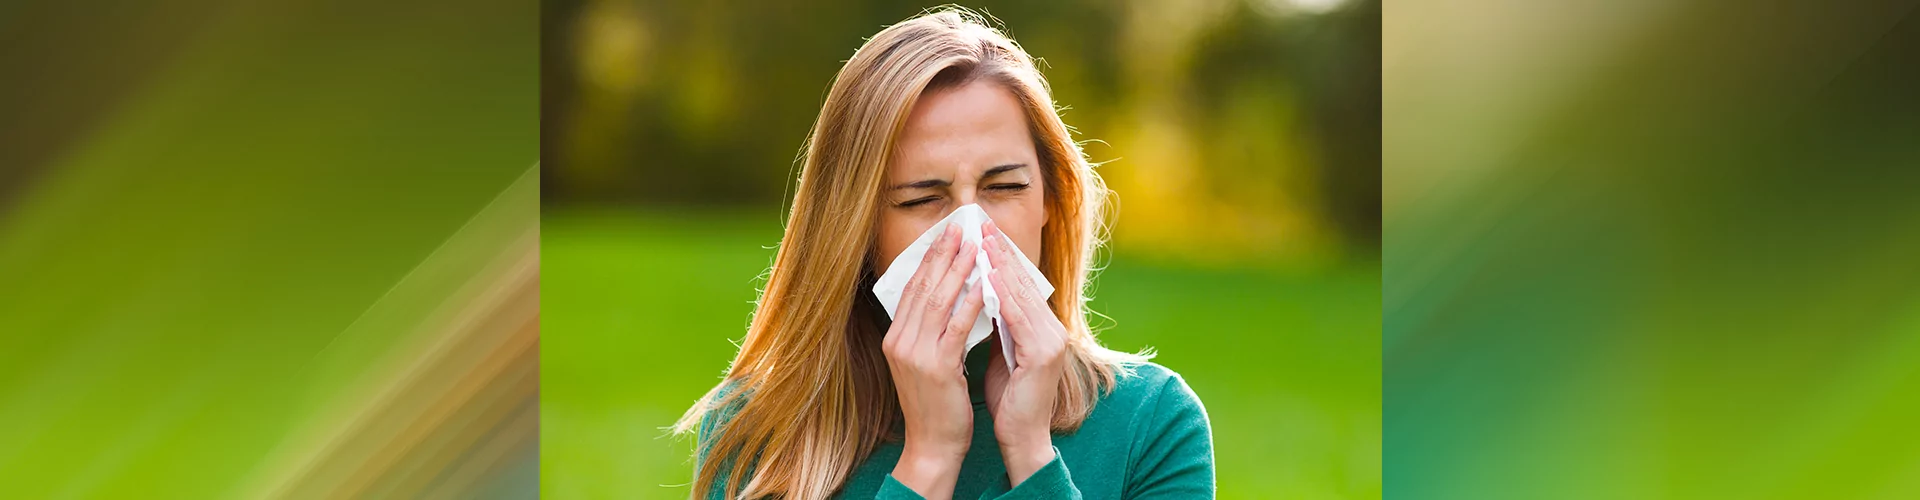 Allergie-stagionali-cause-e-rimedi